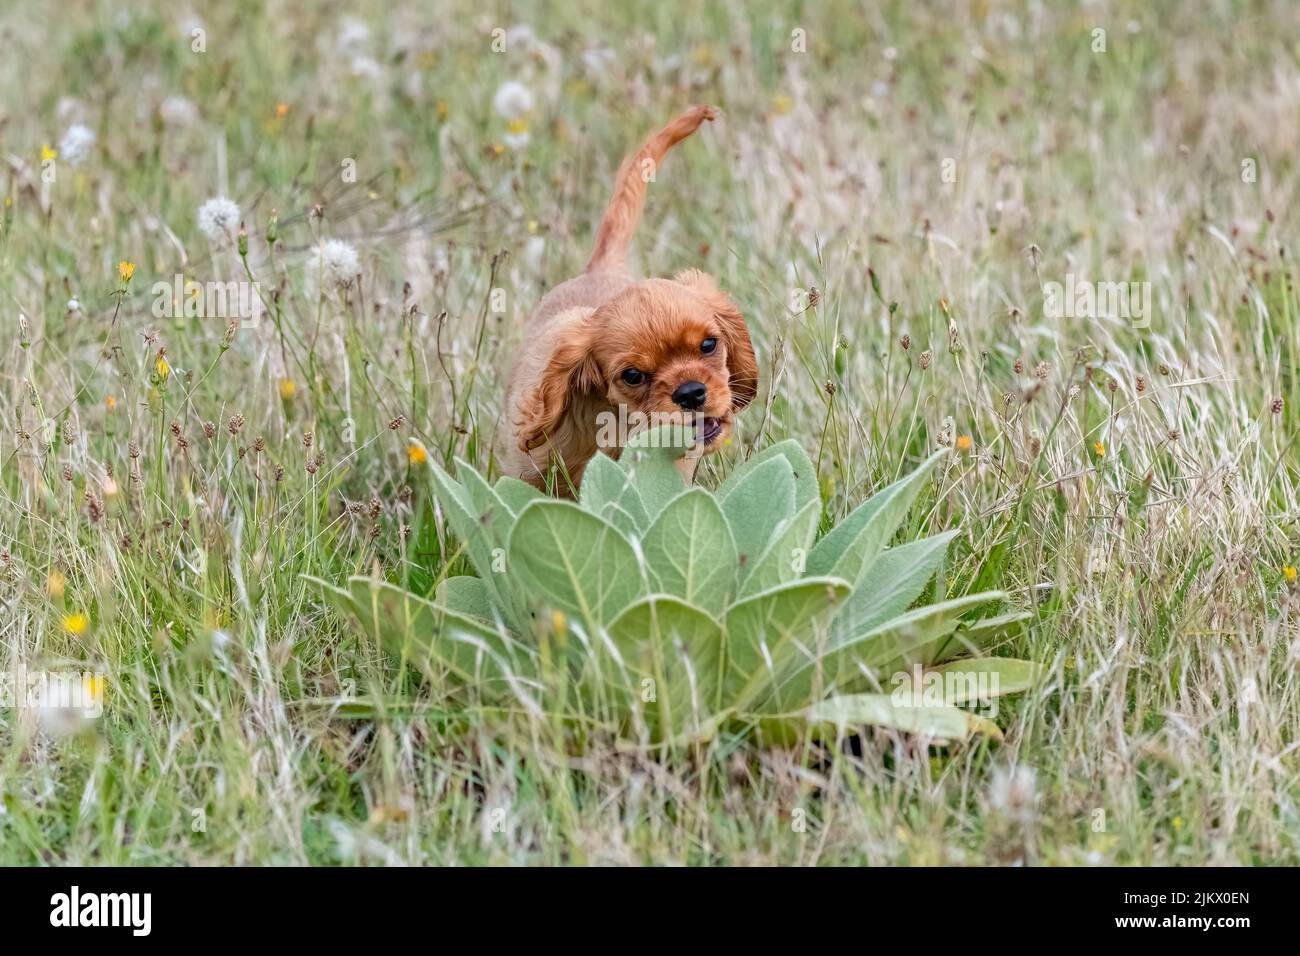 Ein Hund Kavalier König Charles, Porträt eines niedlichen Welpen in einem Feld im Sommer Stockfoto